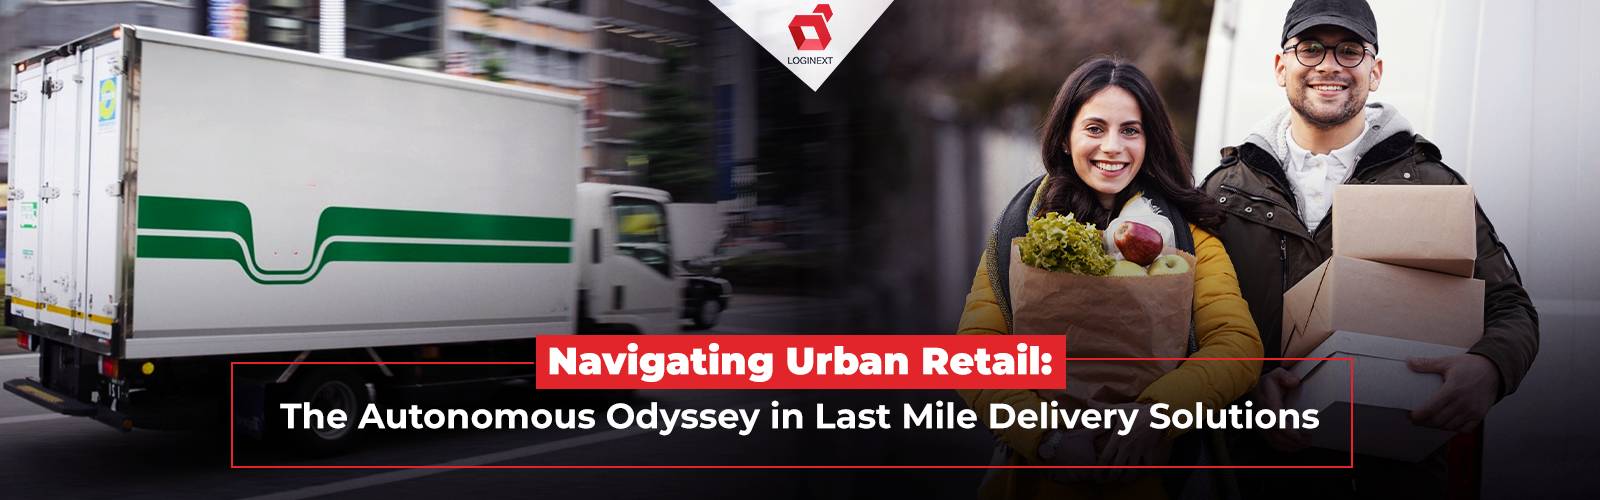 अंतिम मील वितरण समाधानों का उपयोग करके शहरी खुदरा समस्याओं से कैसे निपटें